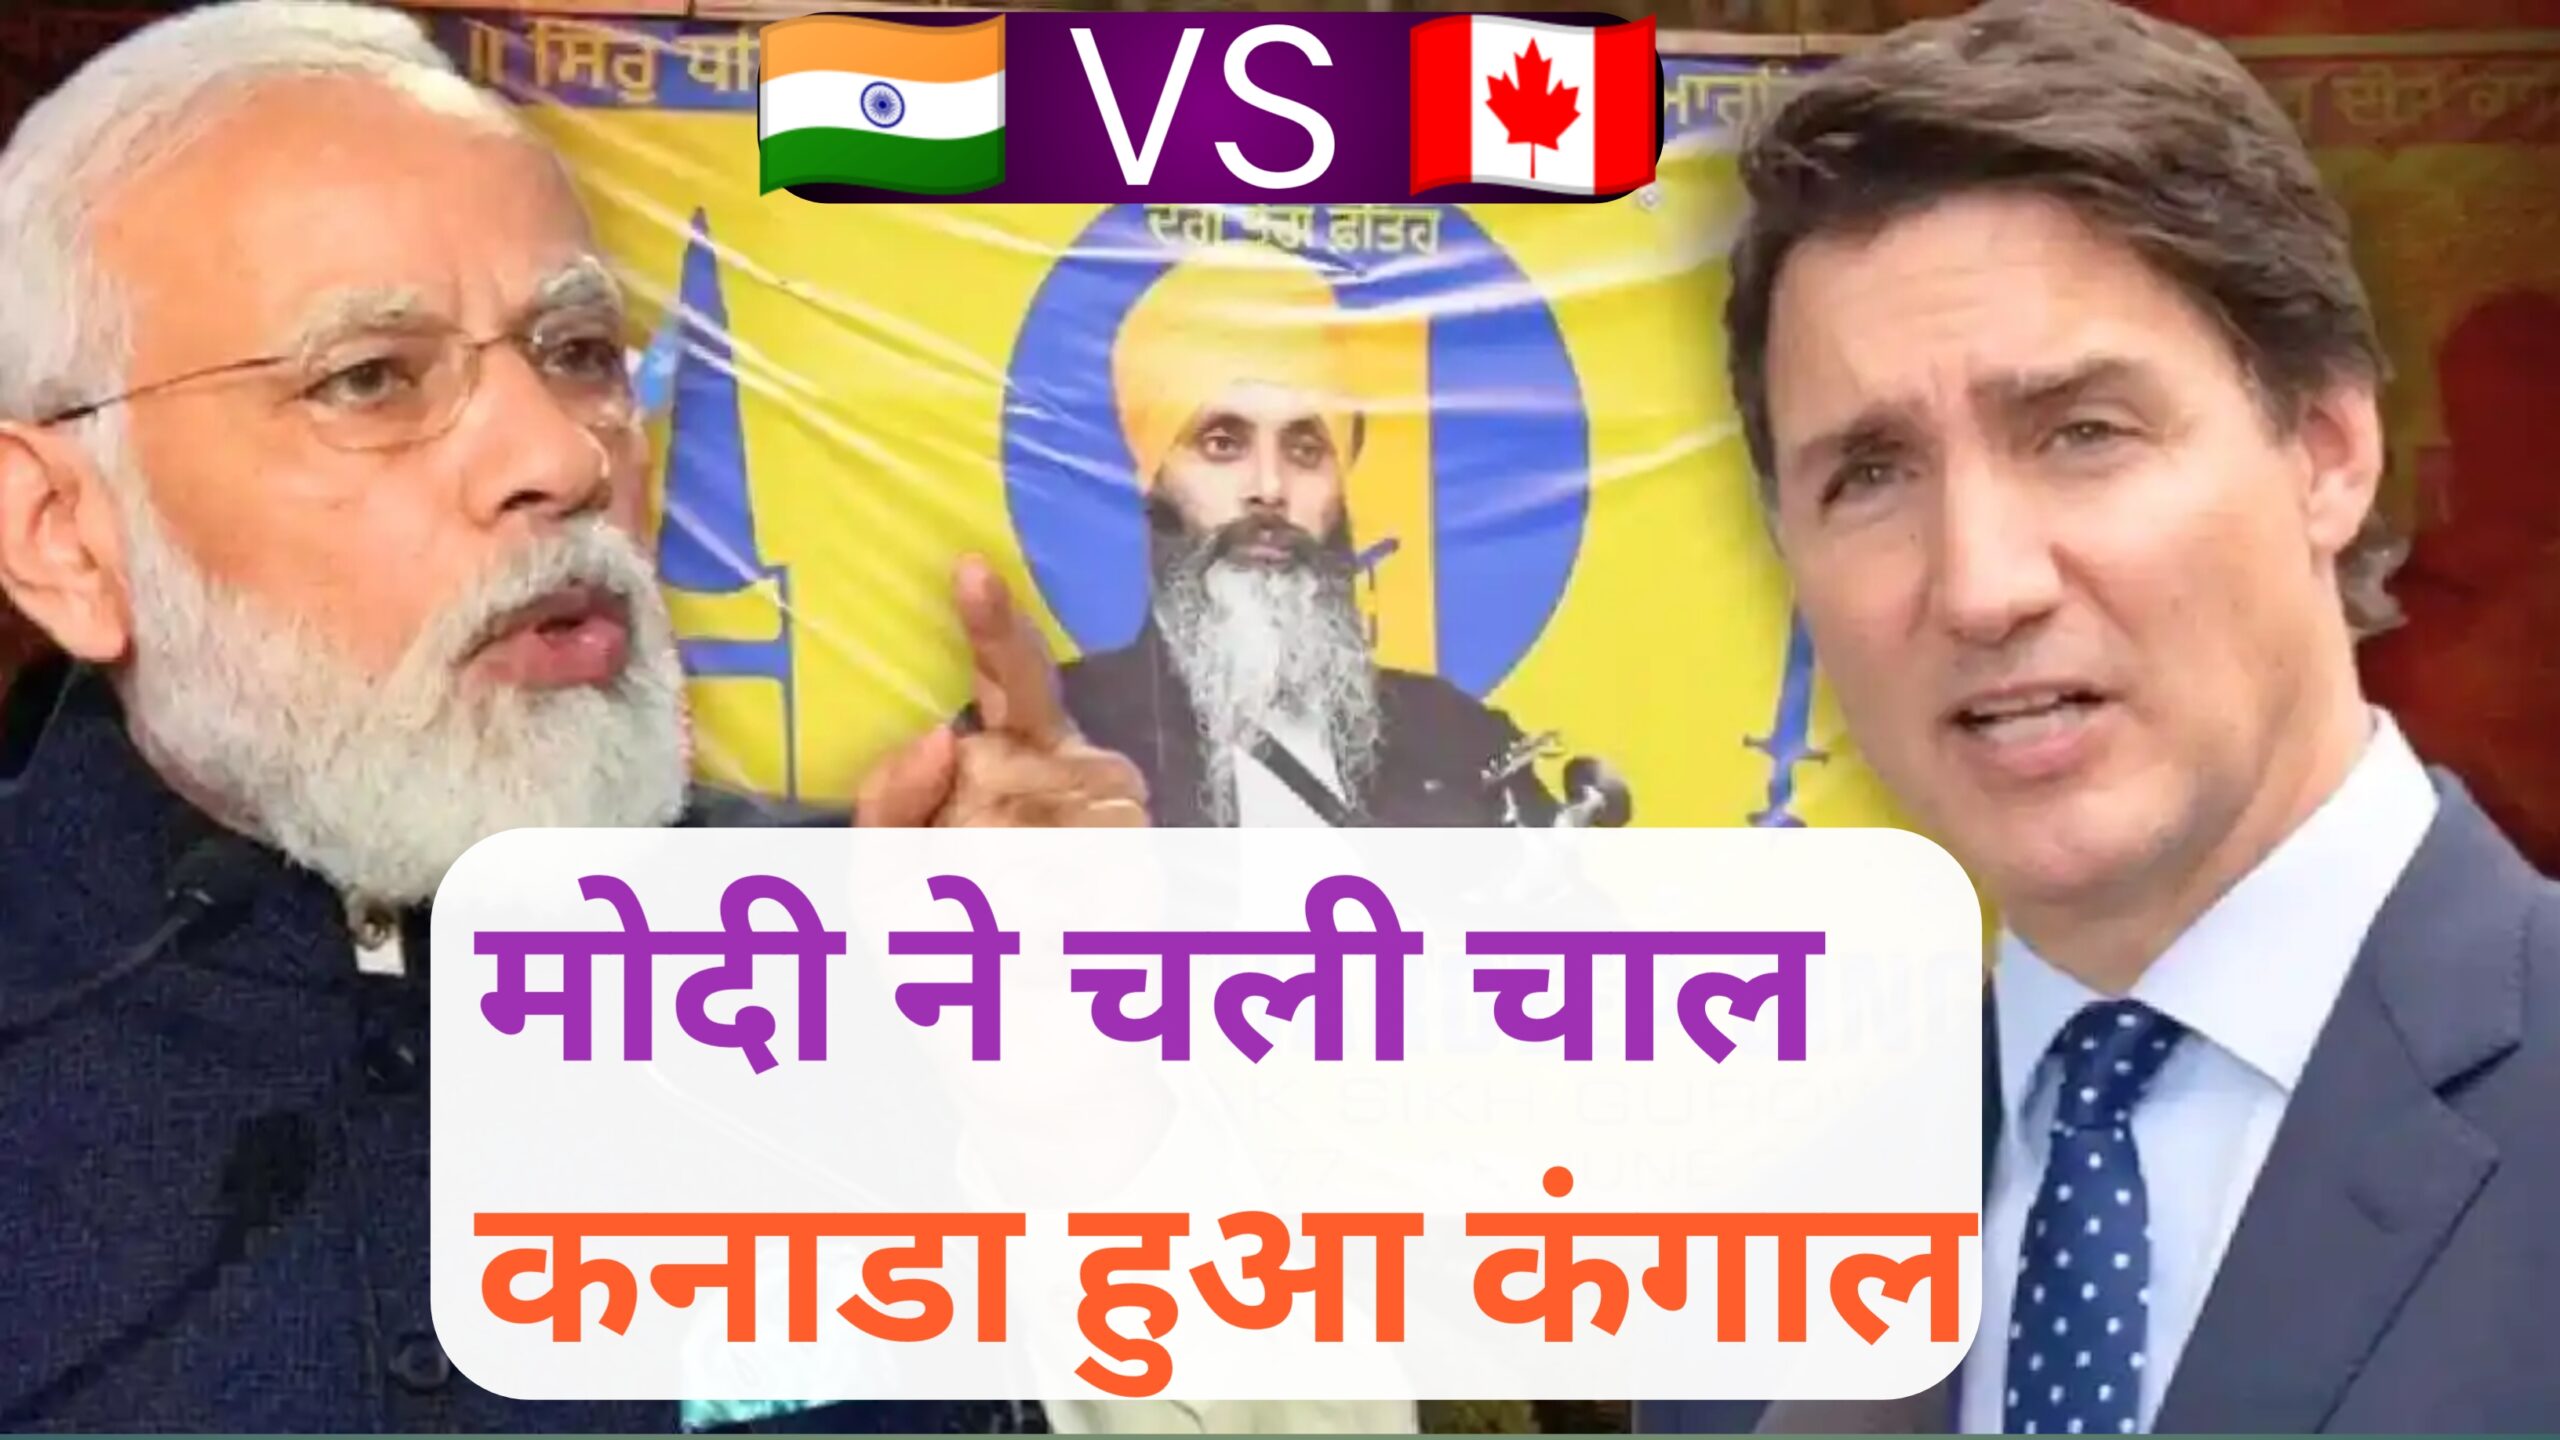 मोदी ने चली बड़ी चाल,खालिस्तानीयो के मसीहा ट्रूडो हुए चुप... अब कनाडा नहीं छोड़ेगा भारतीय बाजार